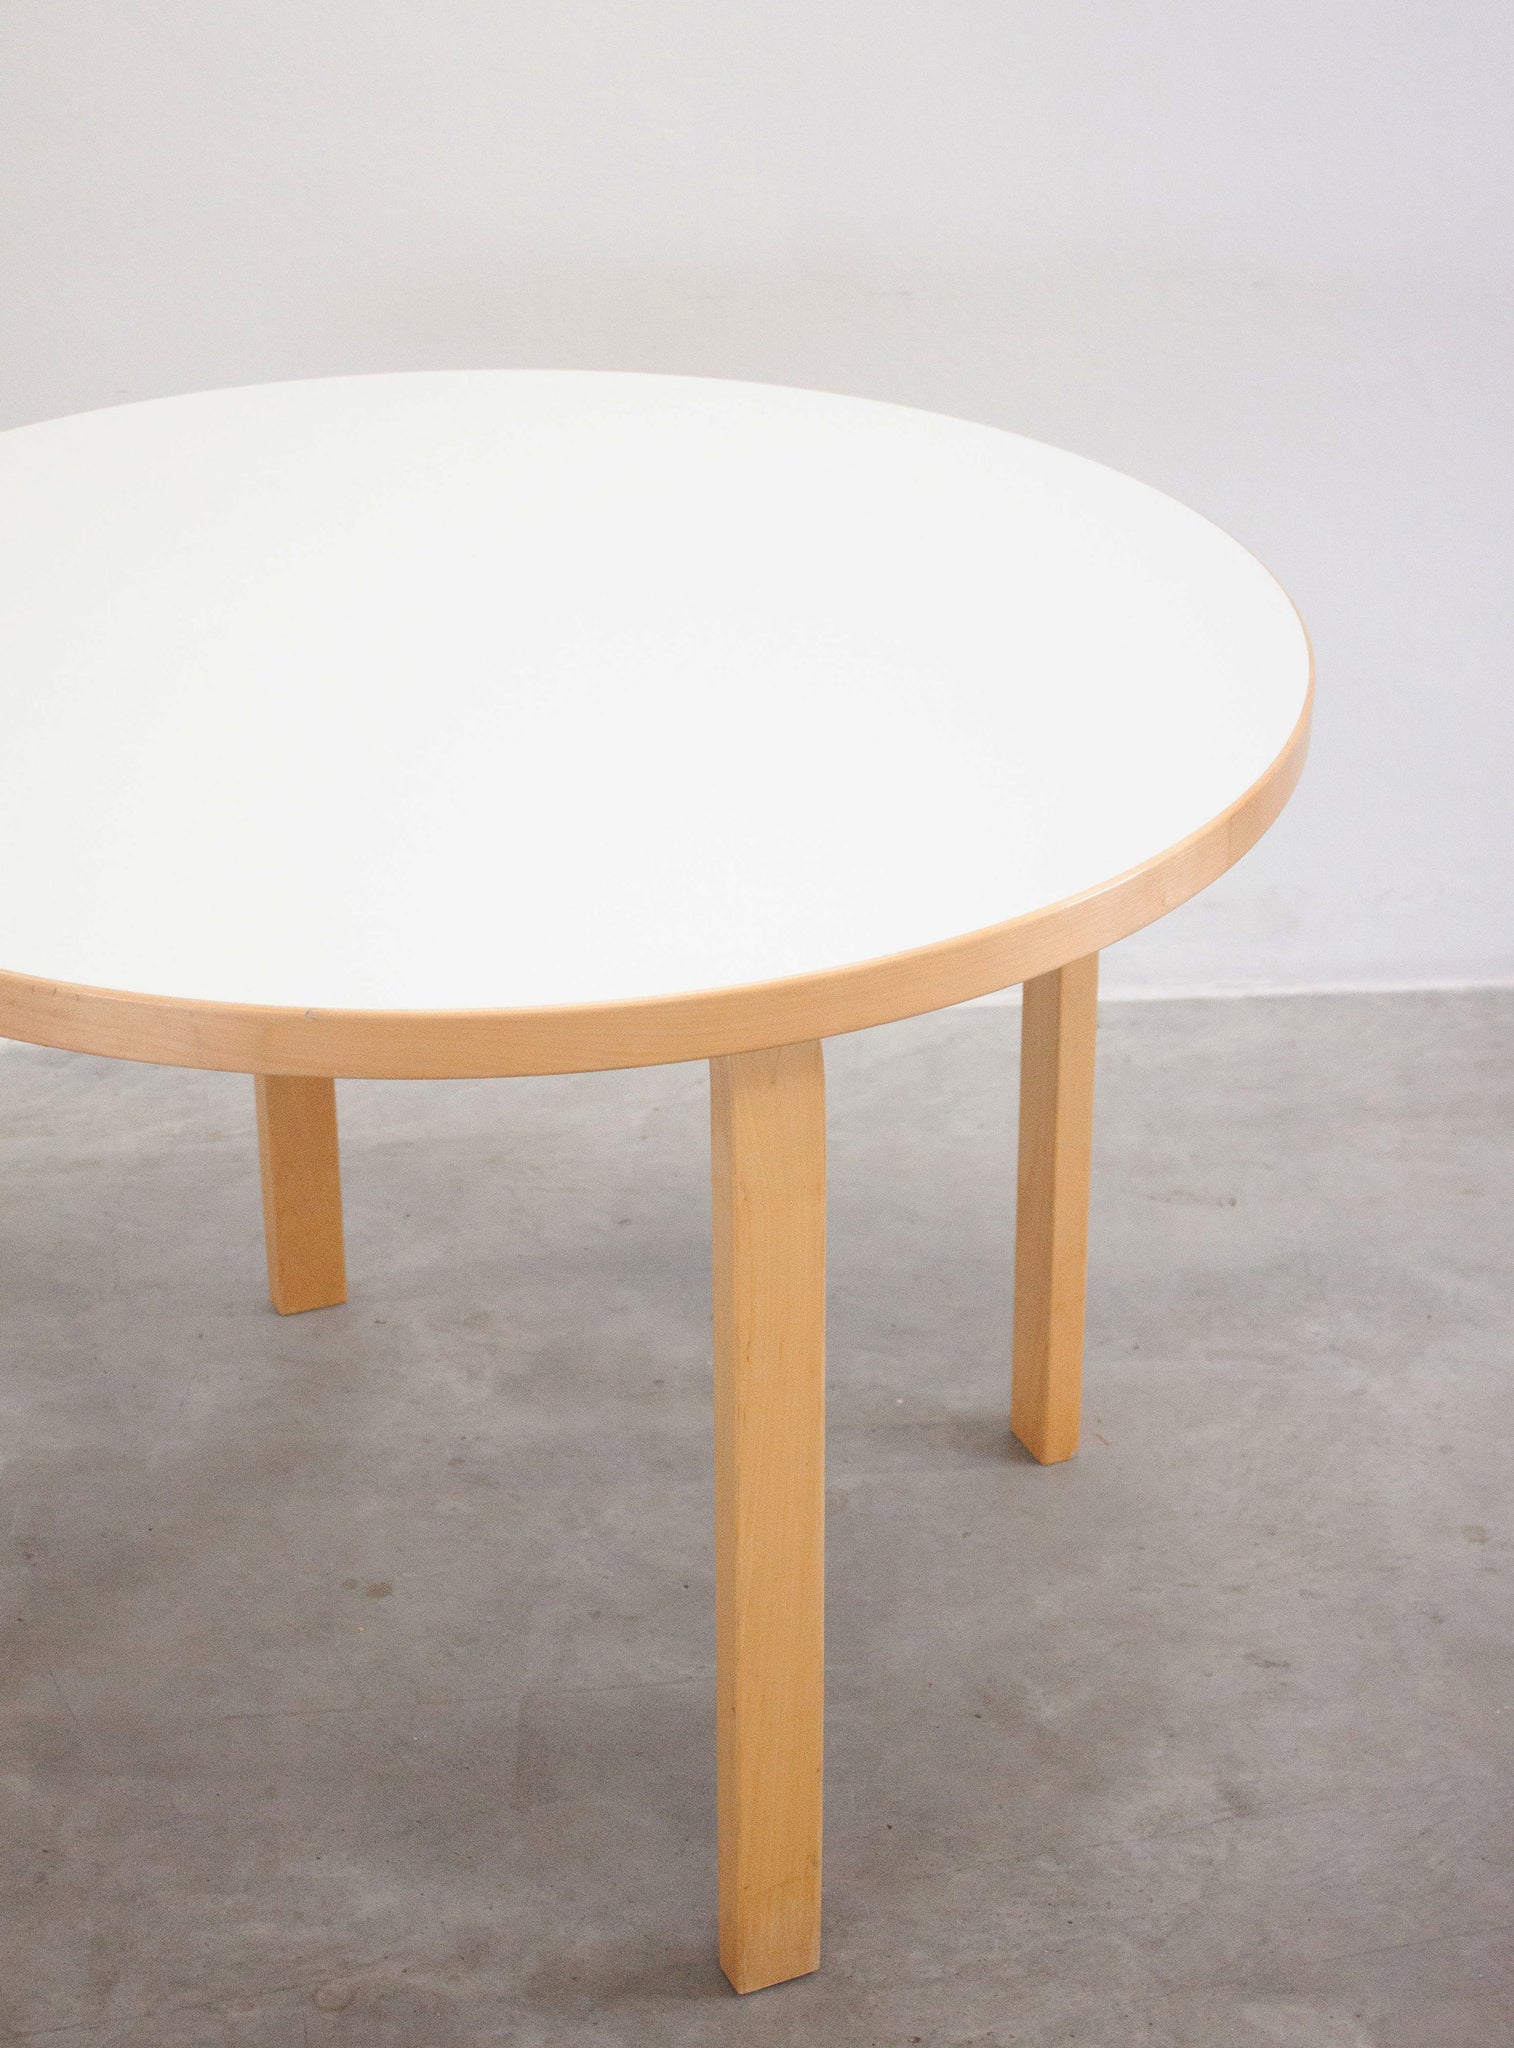 Artek Model 90A Dining Table by Alvar Aalto (White)